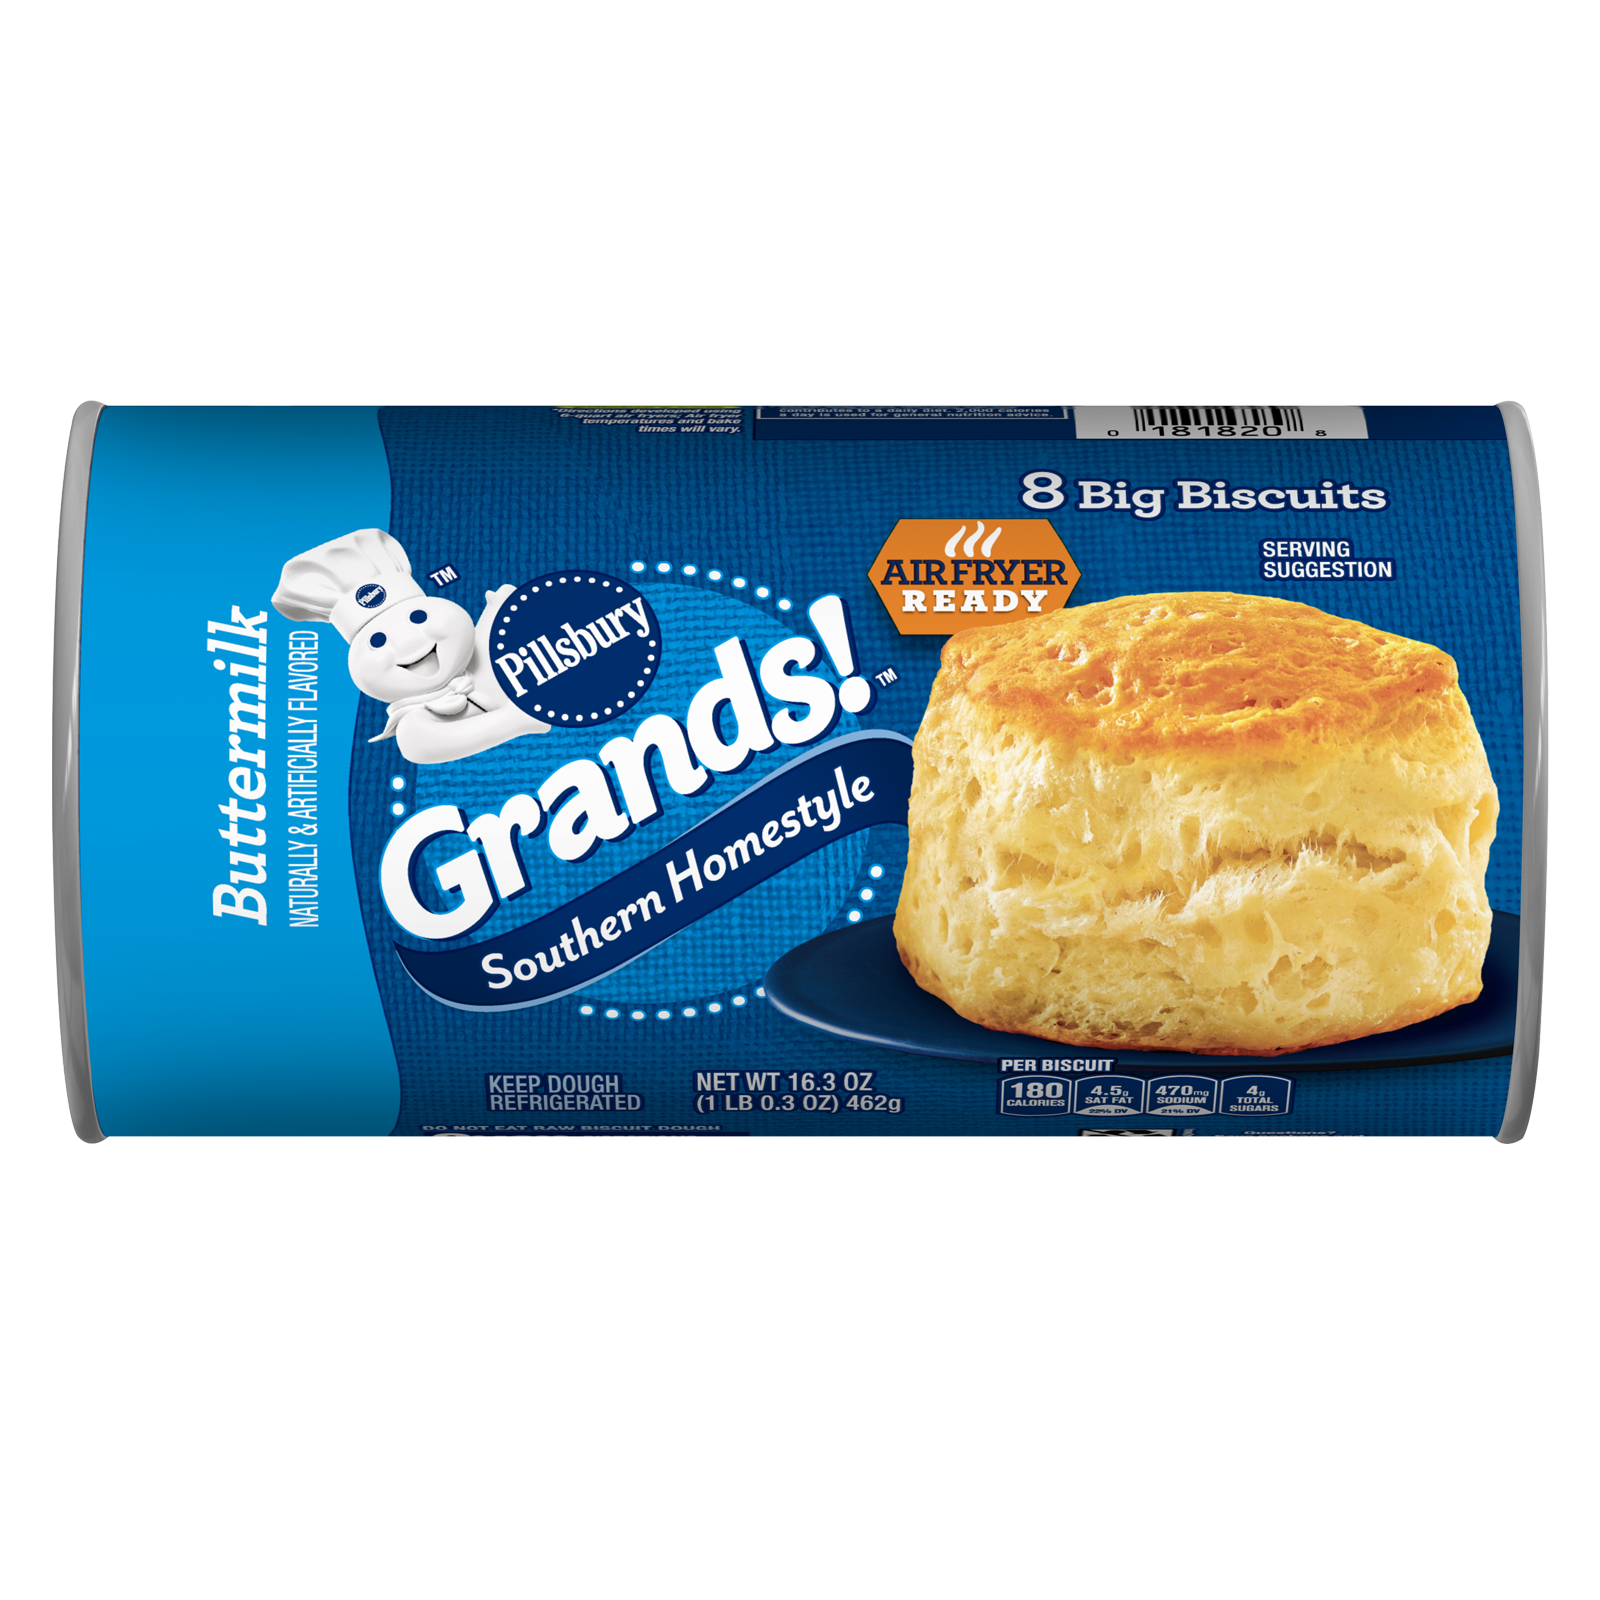 Pillsbury Grands Homestyle Buttermilk Biscuits - 8ct/16.3oz